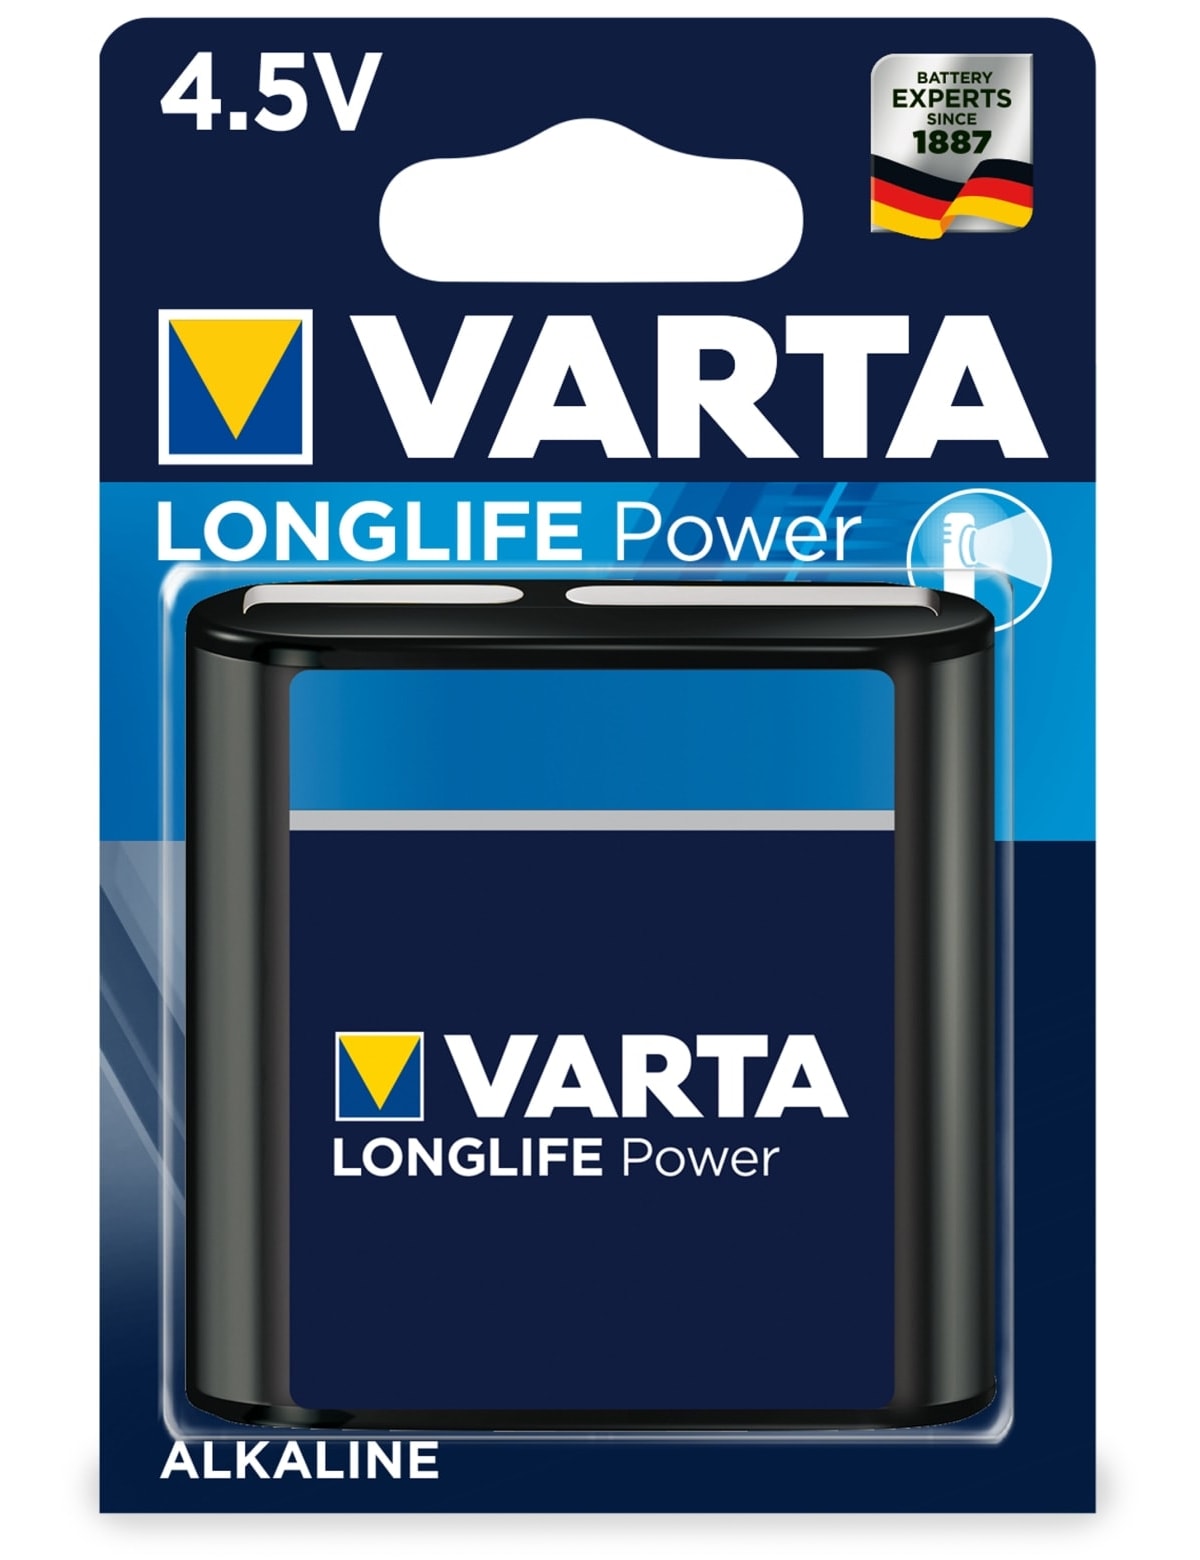 VARTA 4,5V Flachbatterie HIGH ENERGY, 1 Stück